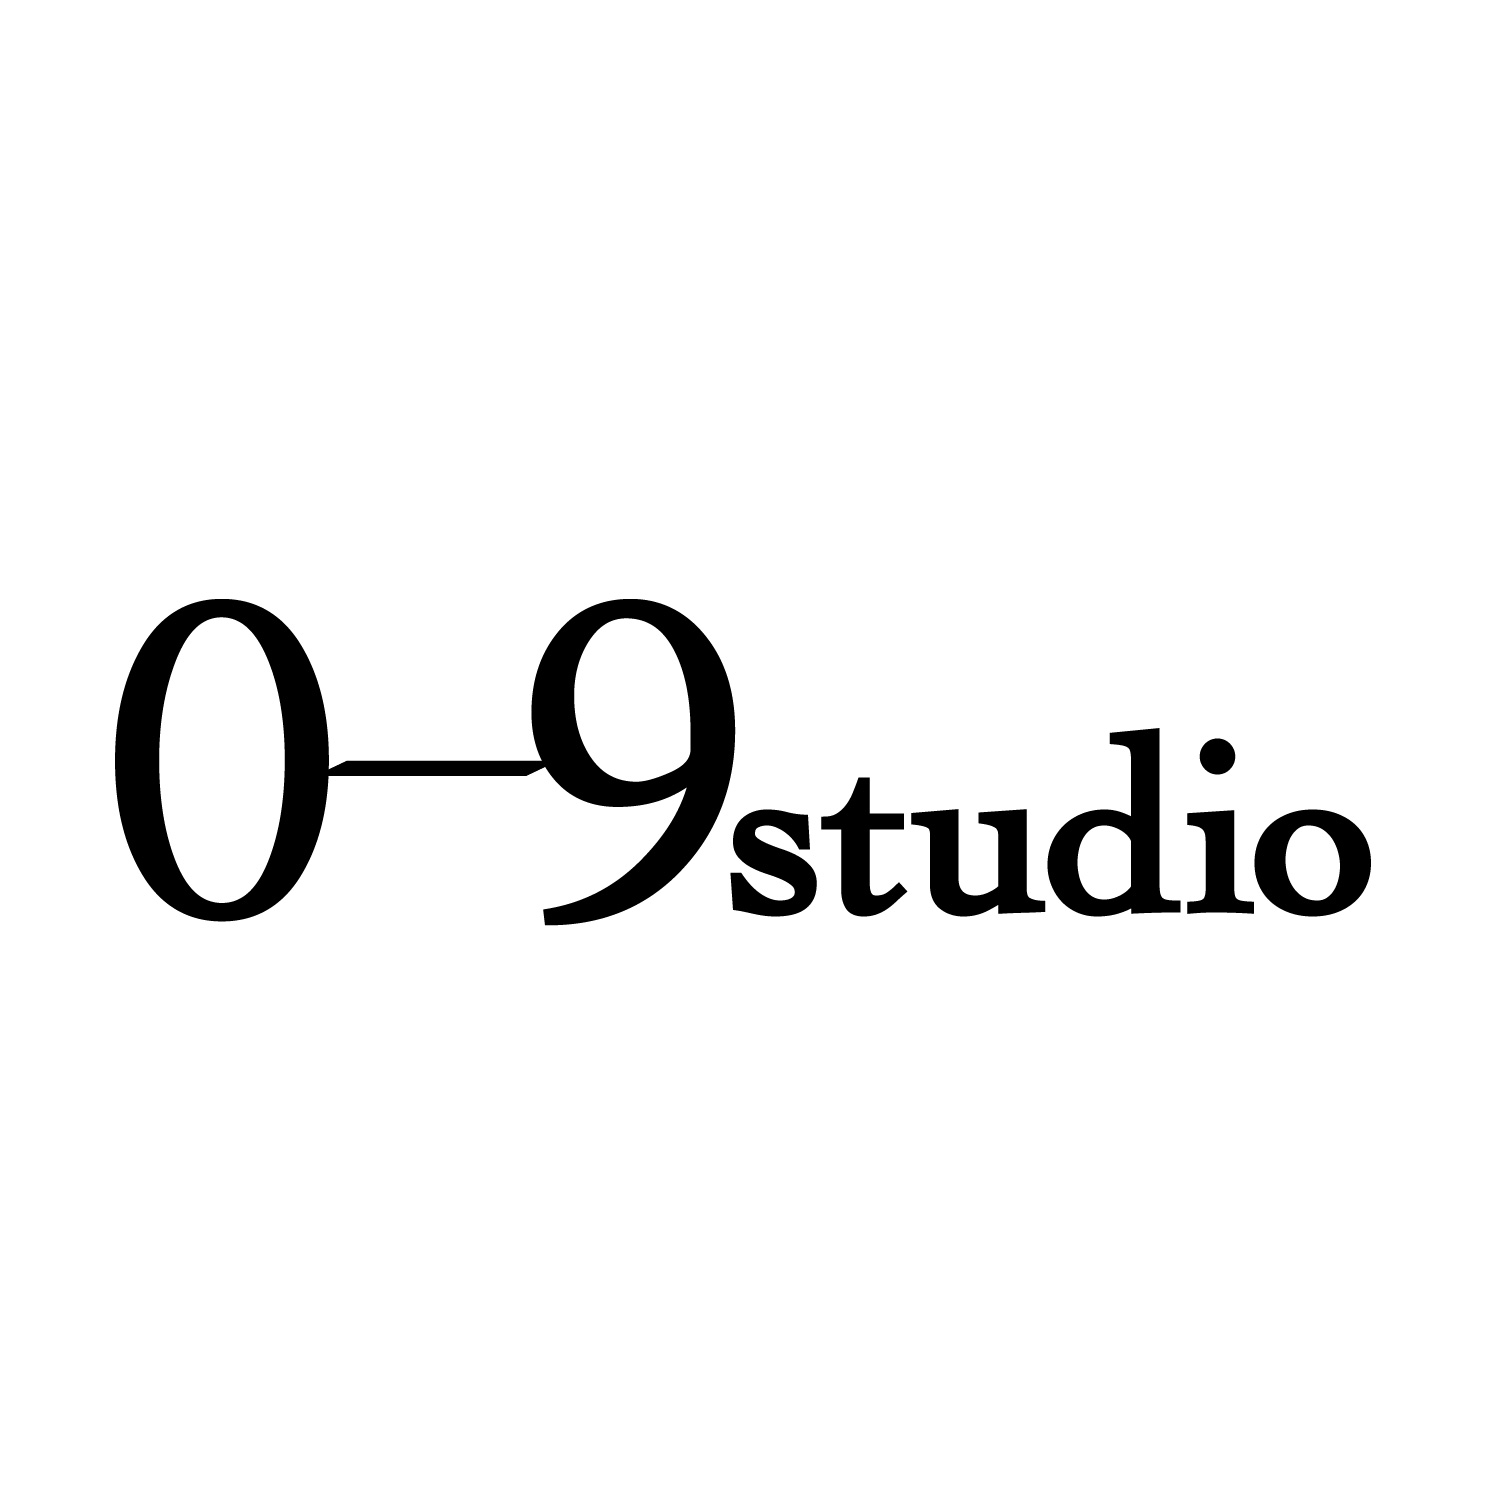 0-9studio ウェブサイトを開設